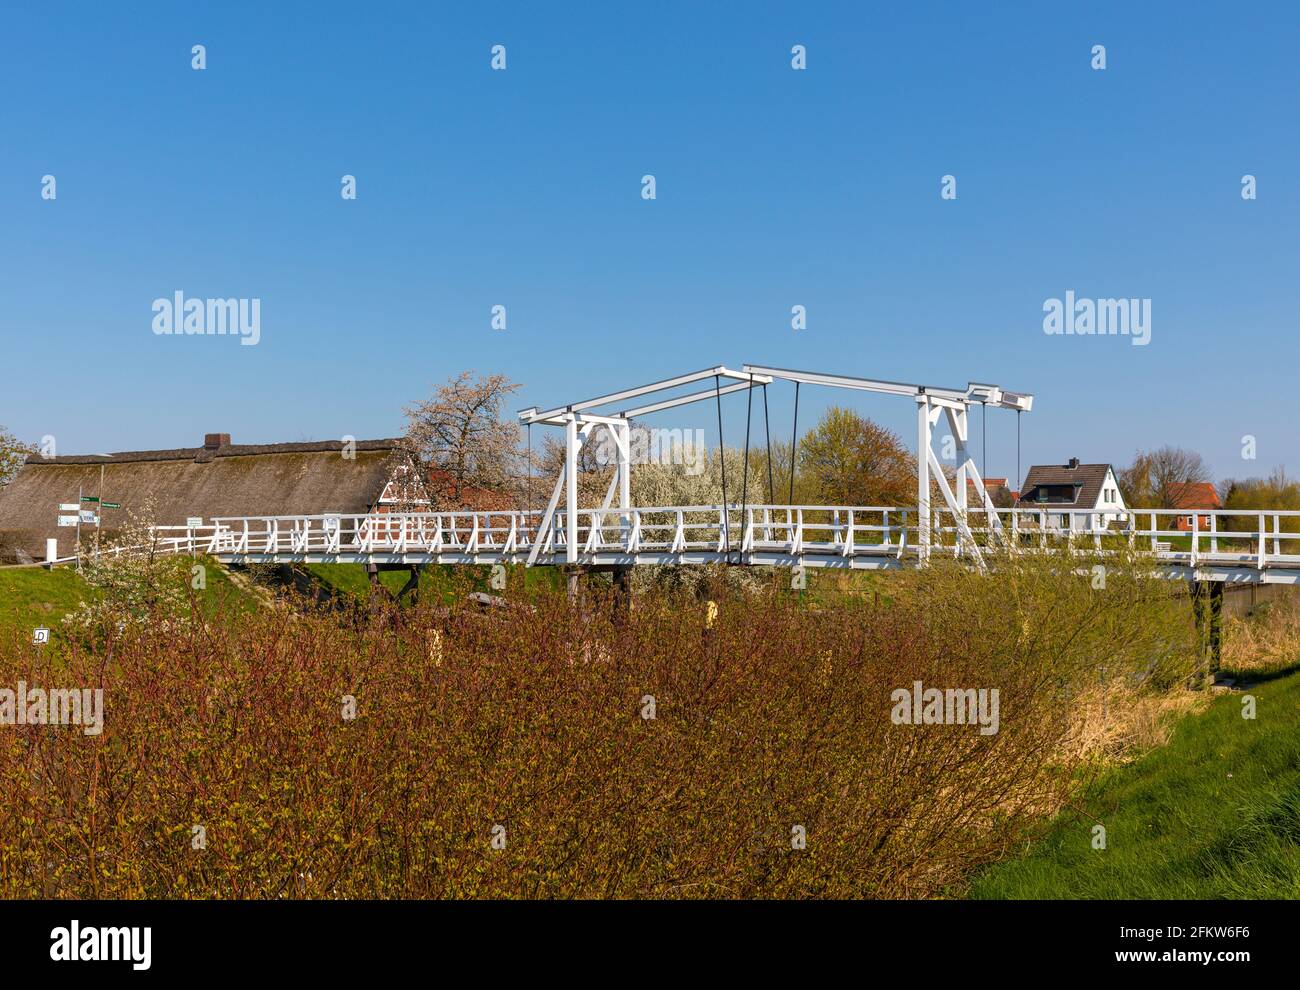 Hölzerne Zugbrücke über die Lühe im Alten Land in Niedersachsen, Bauernhaus und blühende Bäume im Hintergrund Stockfoto